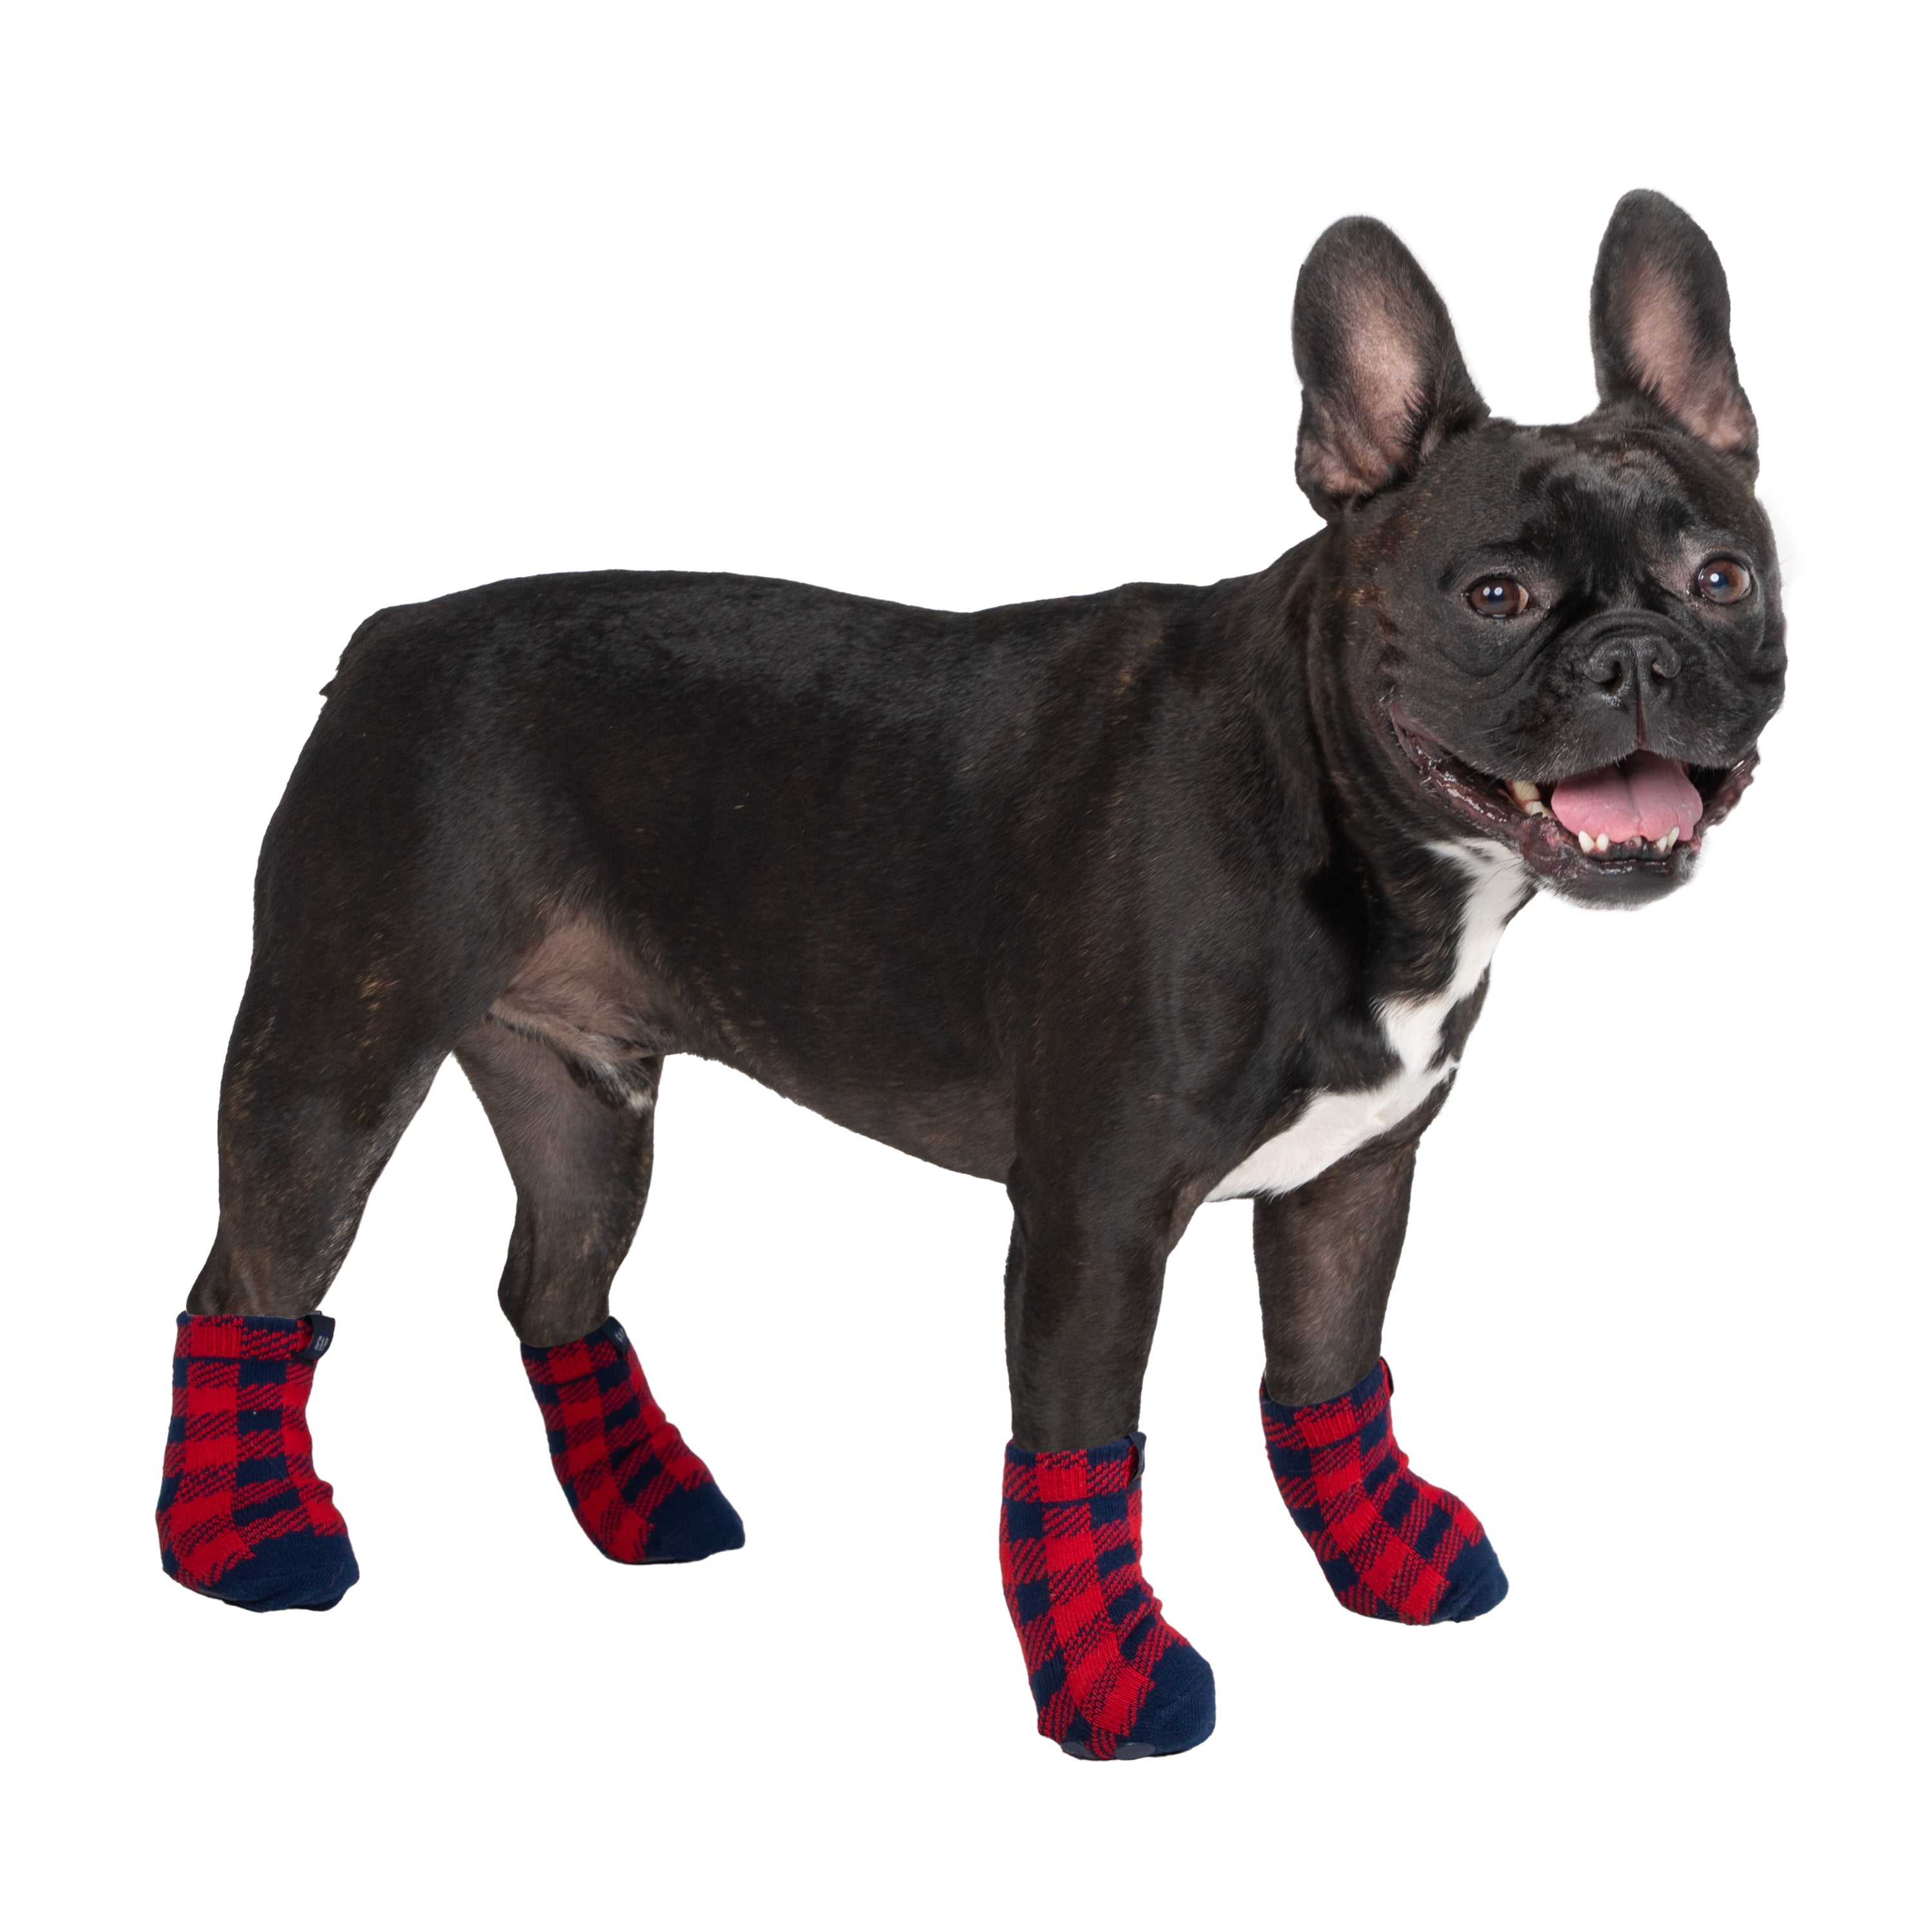 Compression Dog Socks - Red